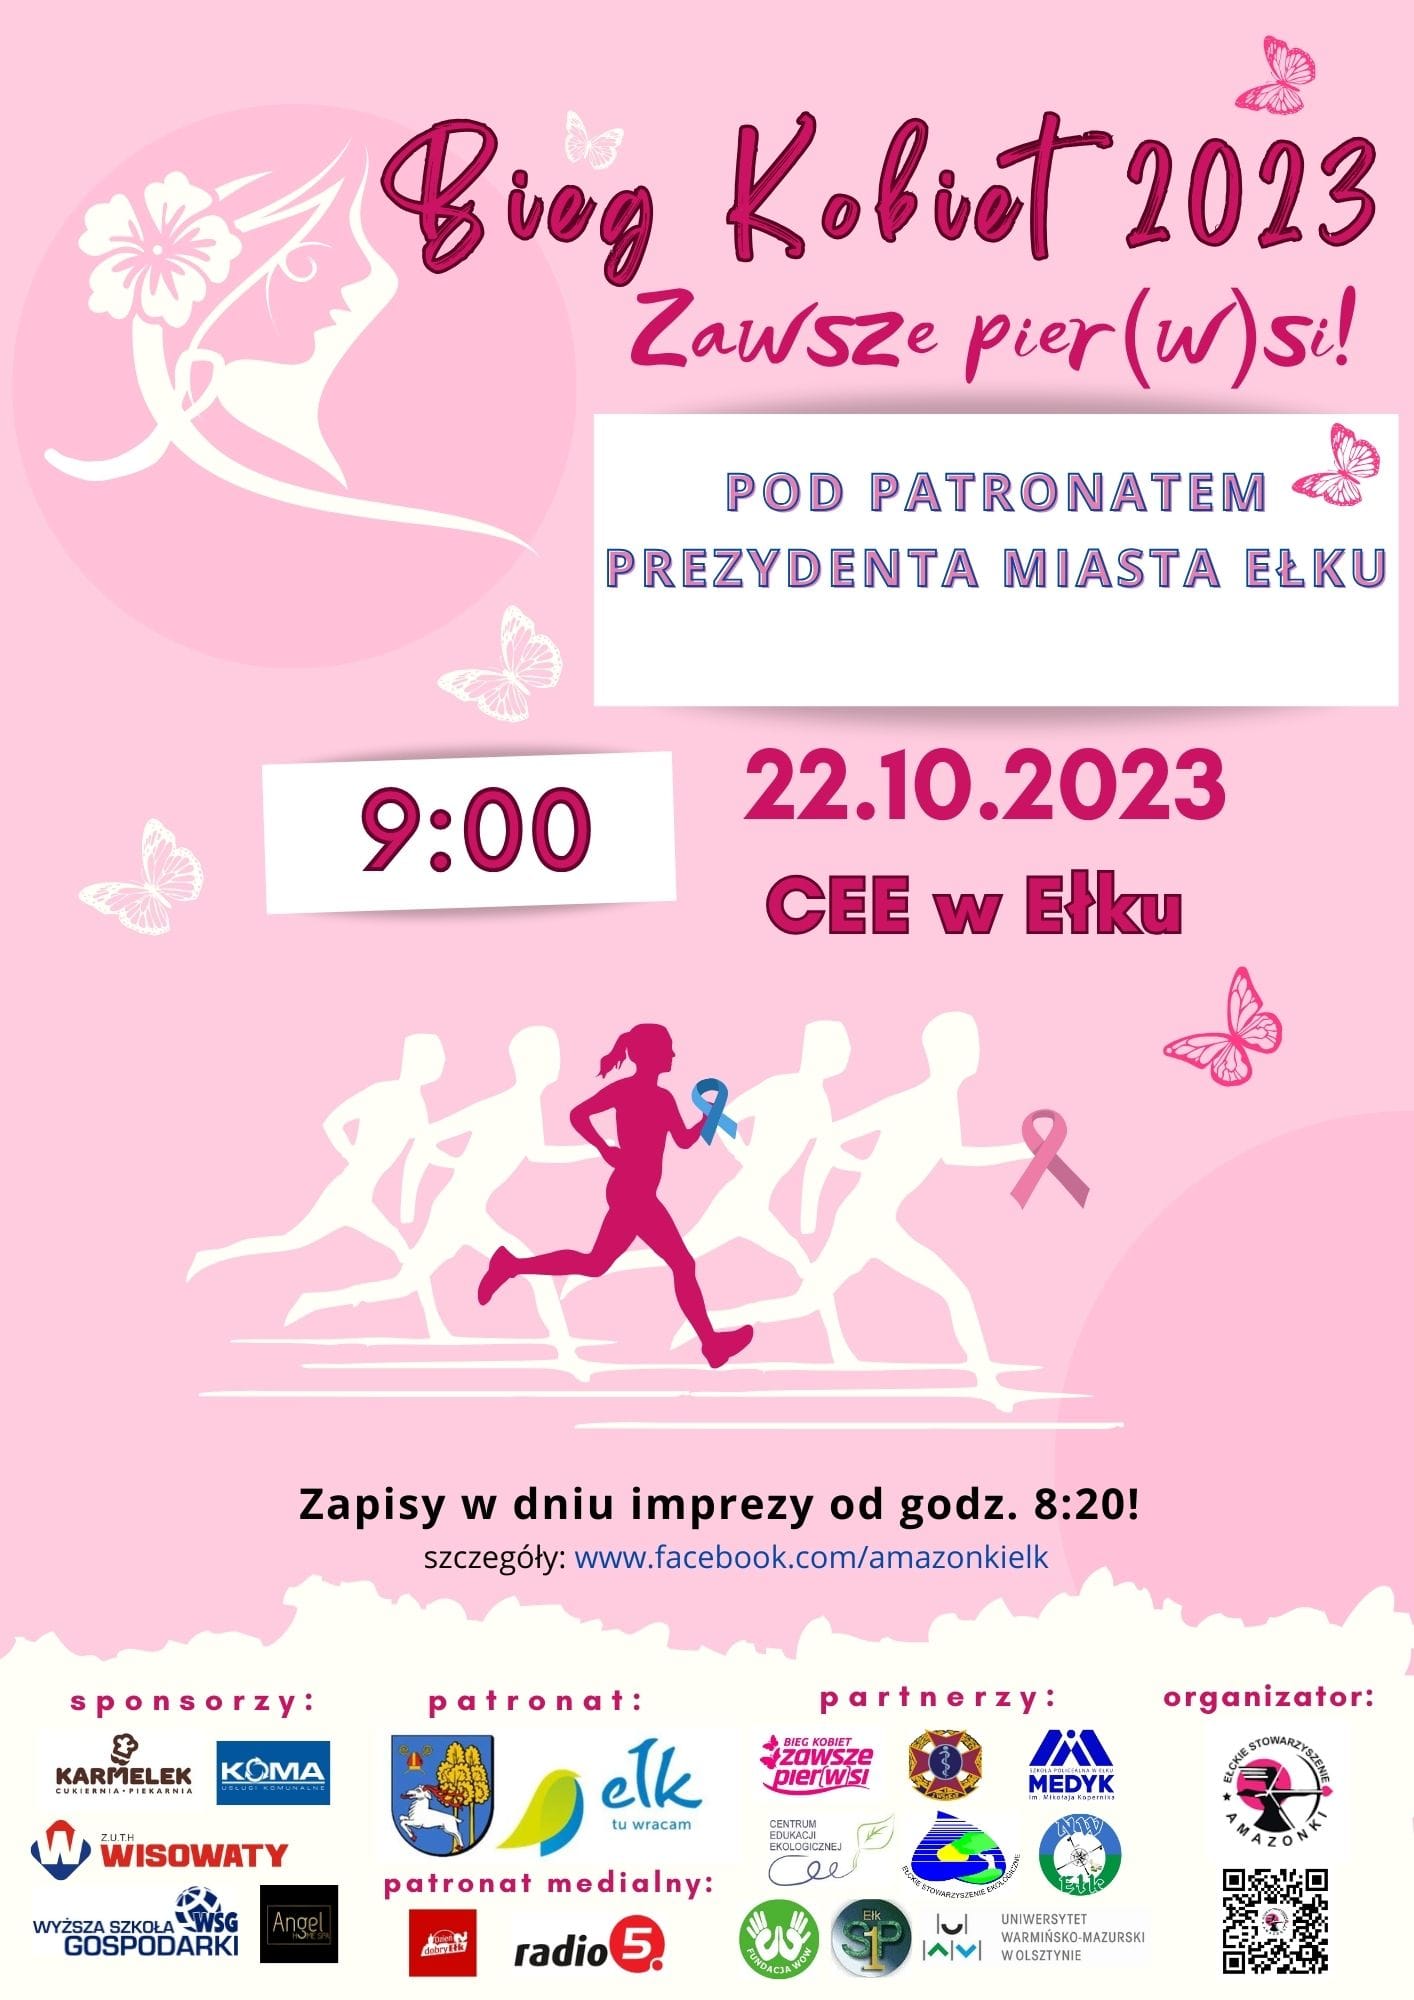 Women's Run 2023 як частина профілактики раку молочної залози!